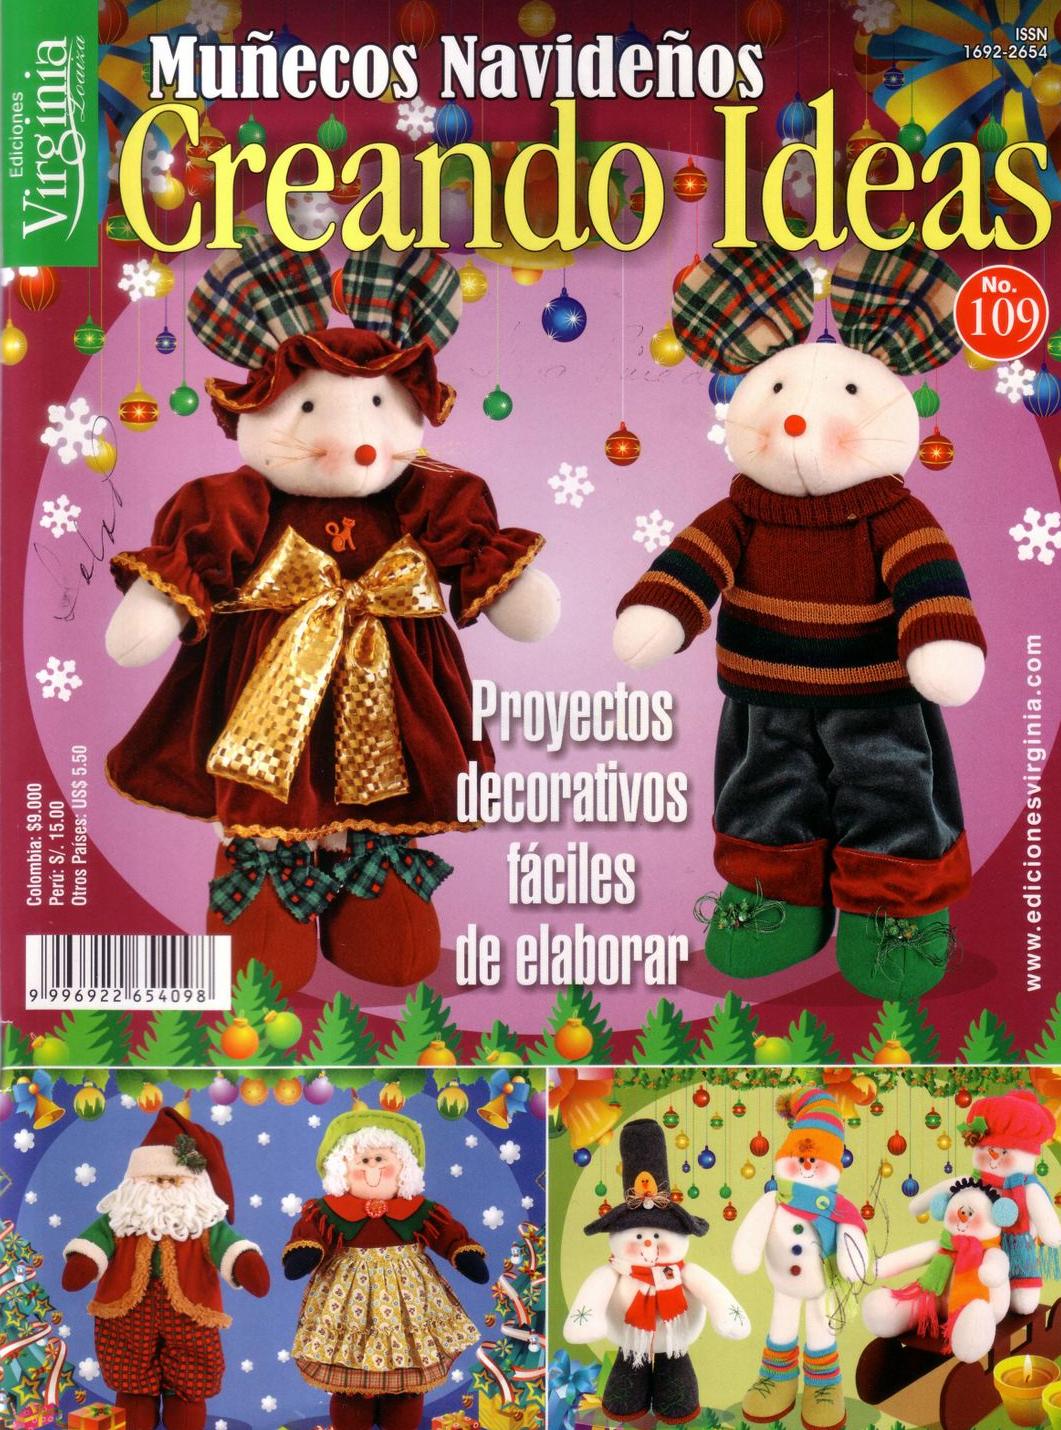 Creando muñecos navideños | Revista de manualidades